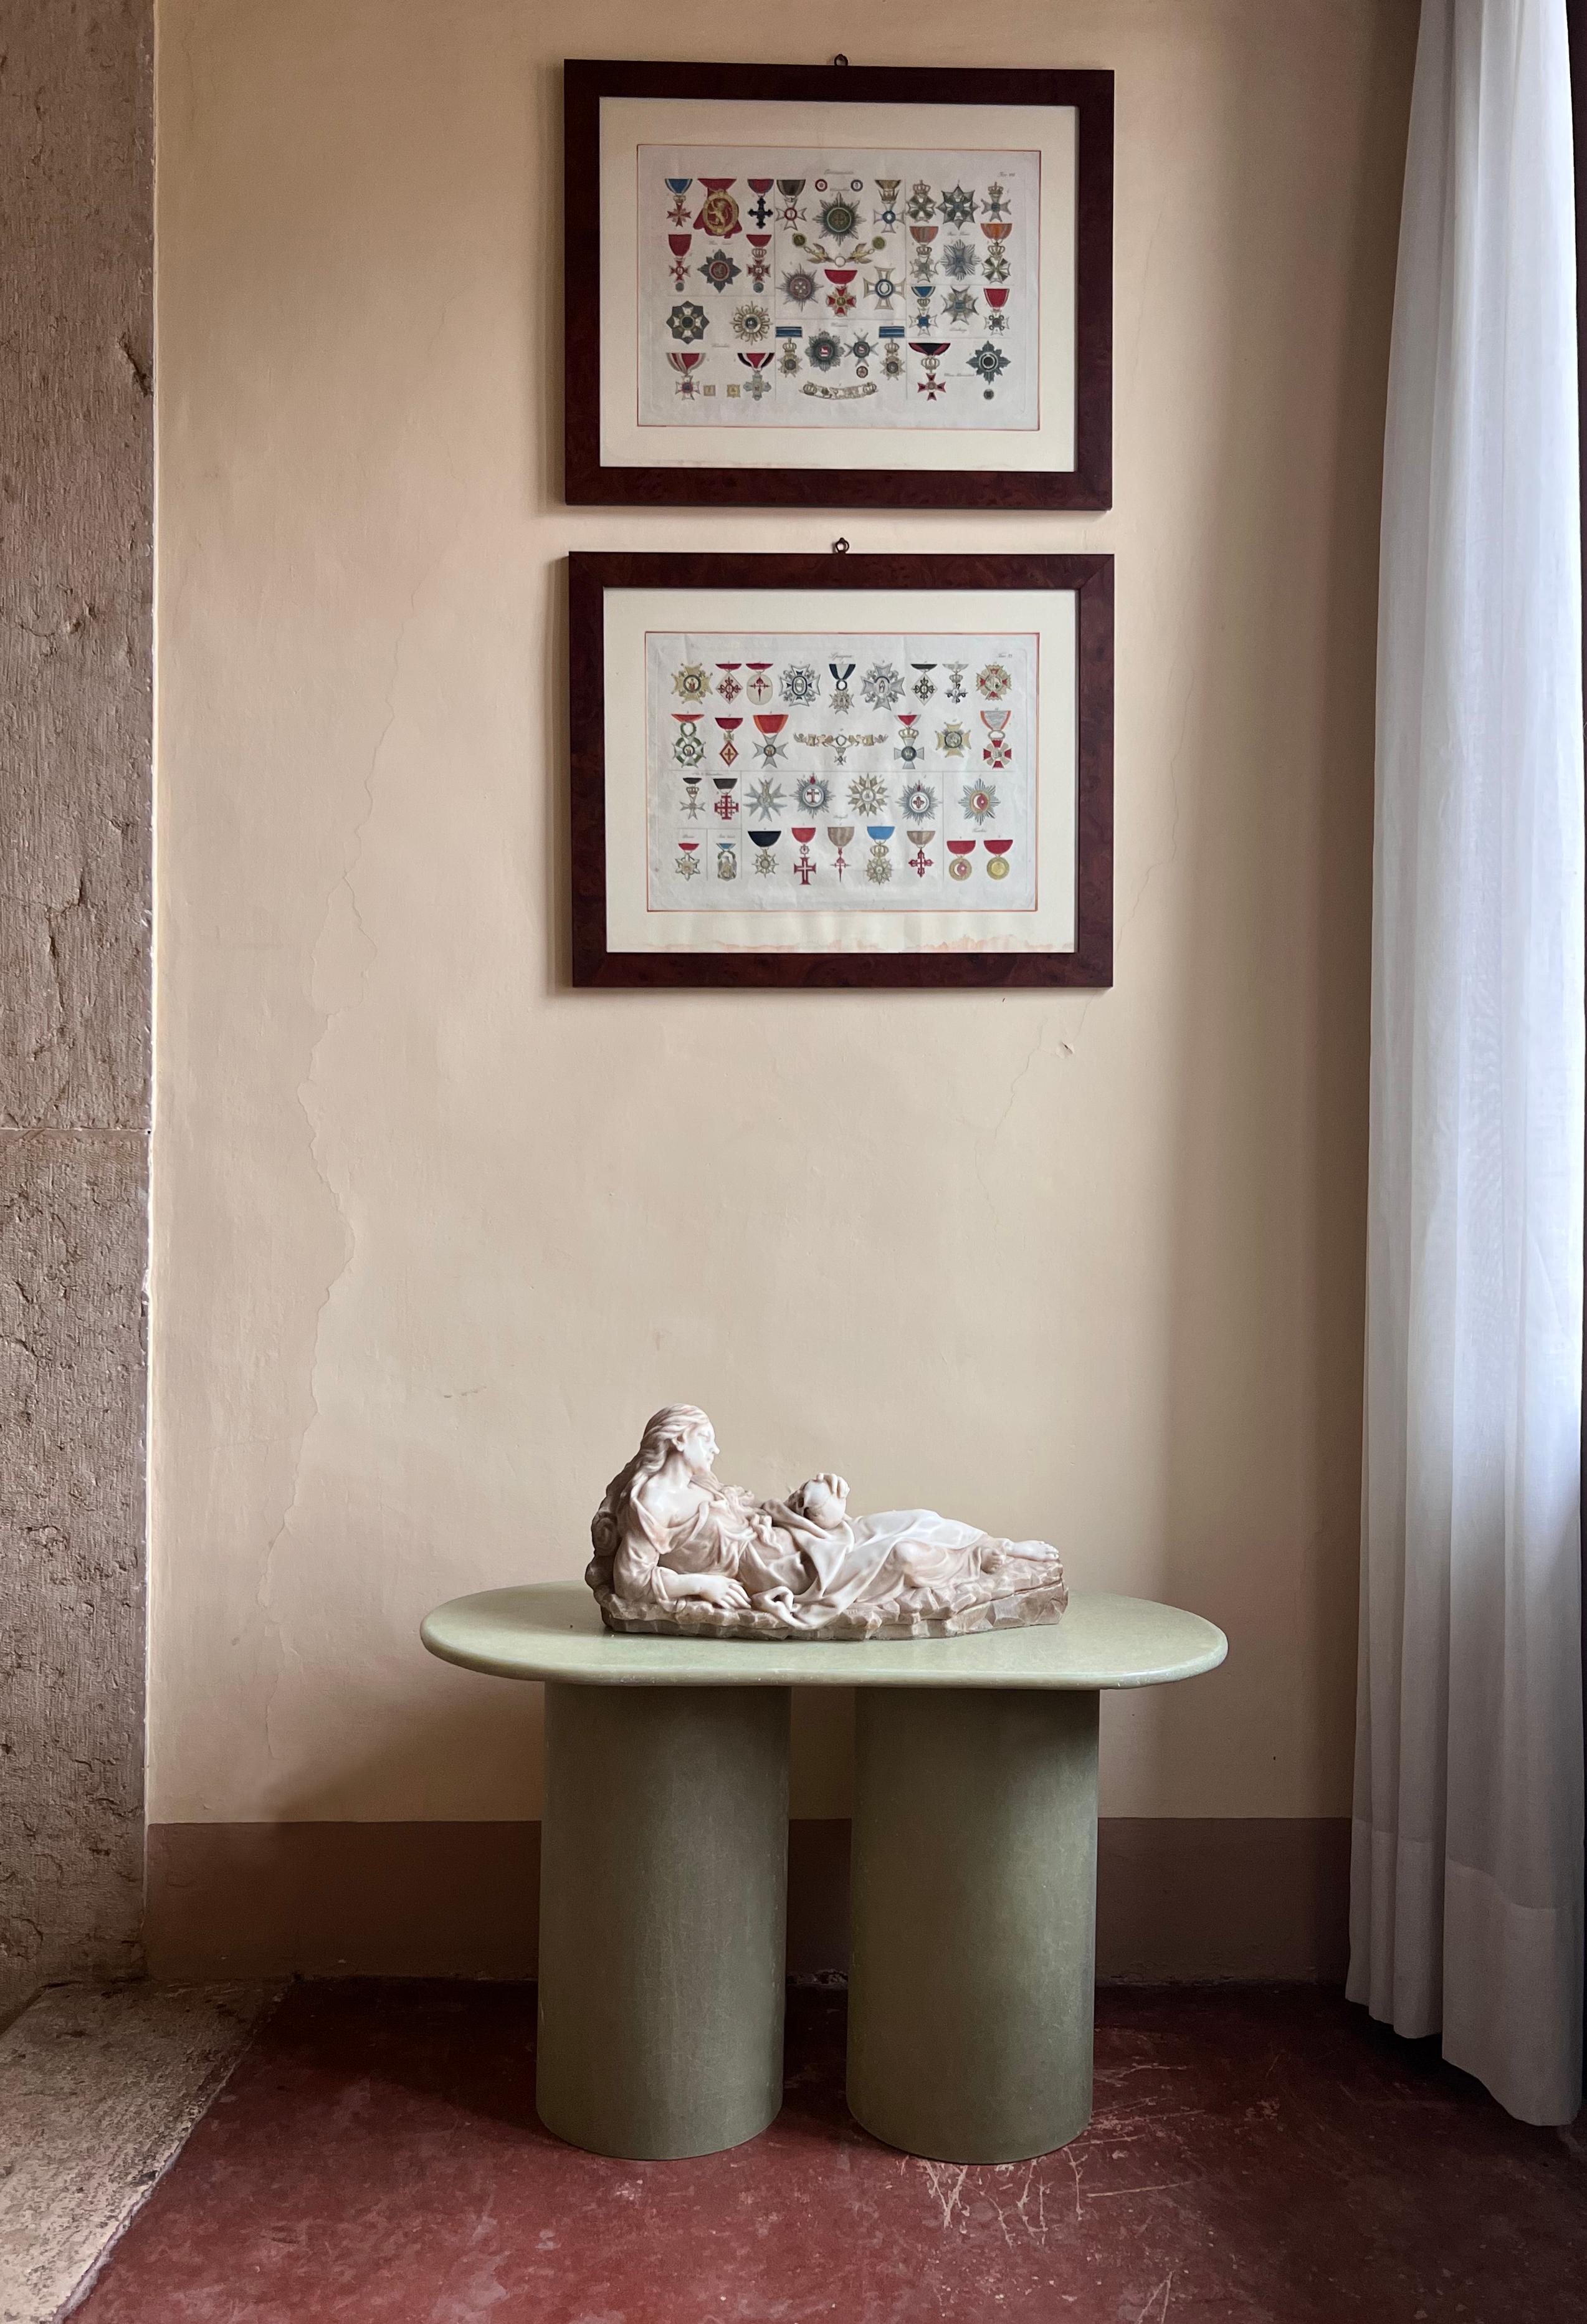 Unser Column Leg Beistelltisch aus rohem Fiberglas ist Teil unserer 'Column' Serie, die von Elin Aschberg im Jahr 2018 entworfen wurde. Er hat eine kompakte Tischplatte aus rohem Fiberglas. Die einzigartige Oberfläche ähnelt Marmor und fühlt sich